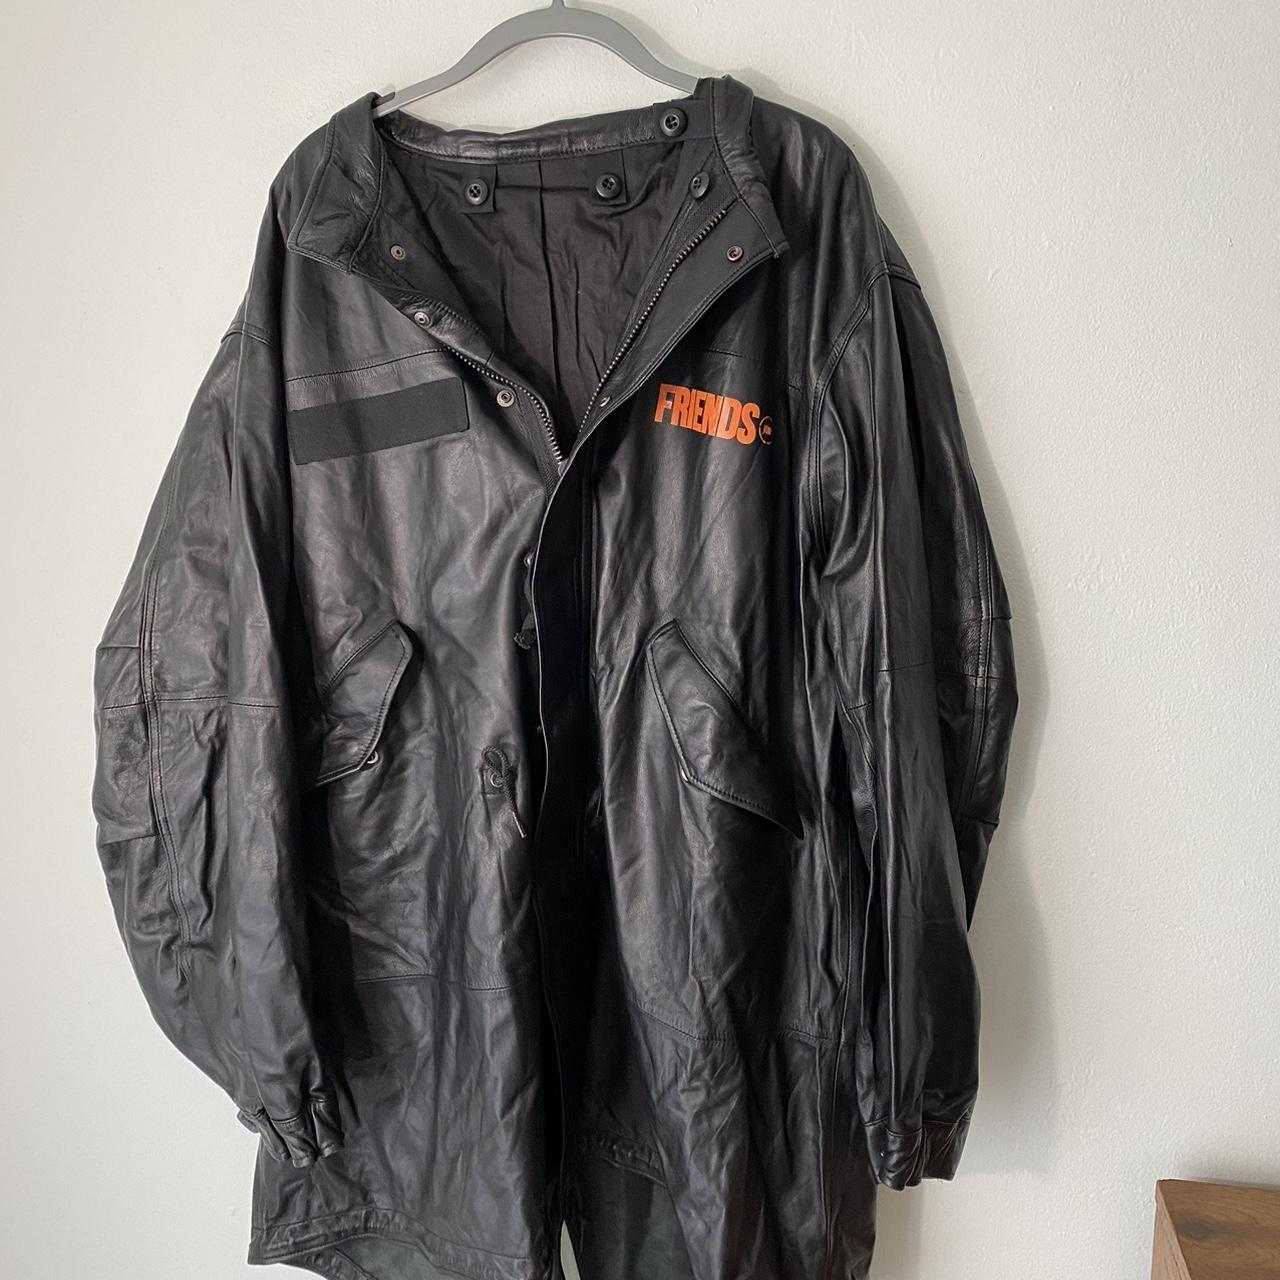 VLONE x Fragment Design Crossover Back Large V Reversible Padded Clothes  Black Jacket VLJK21001